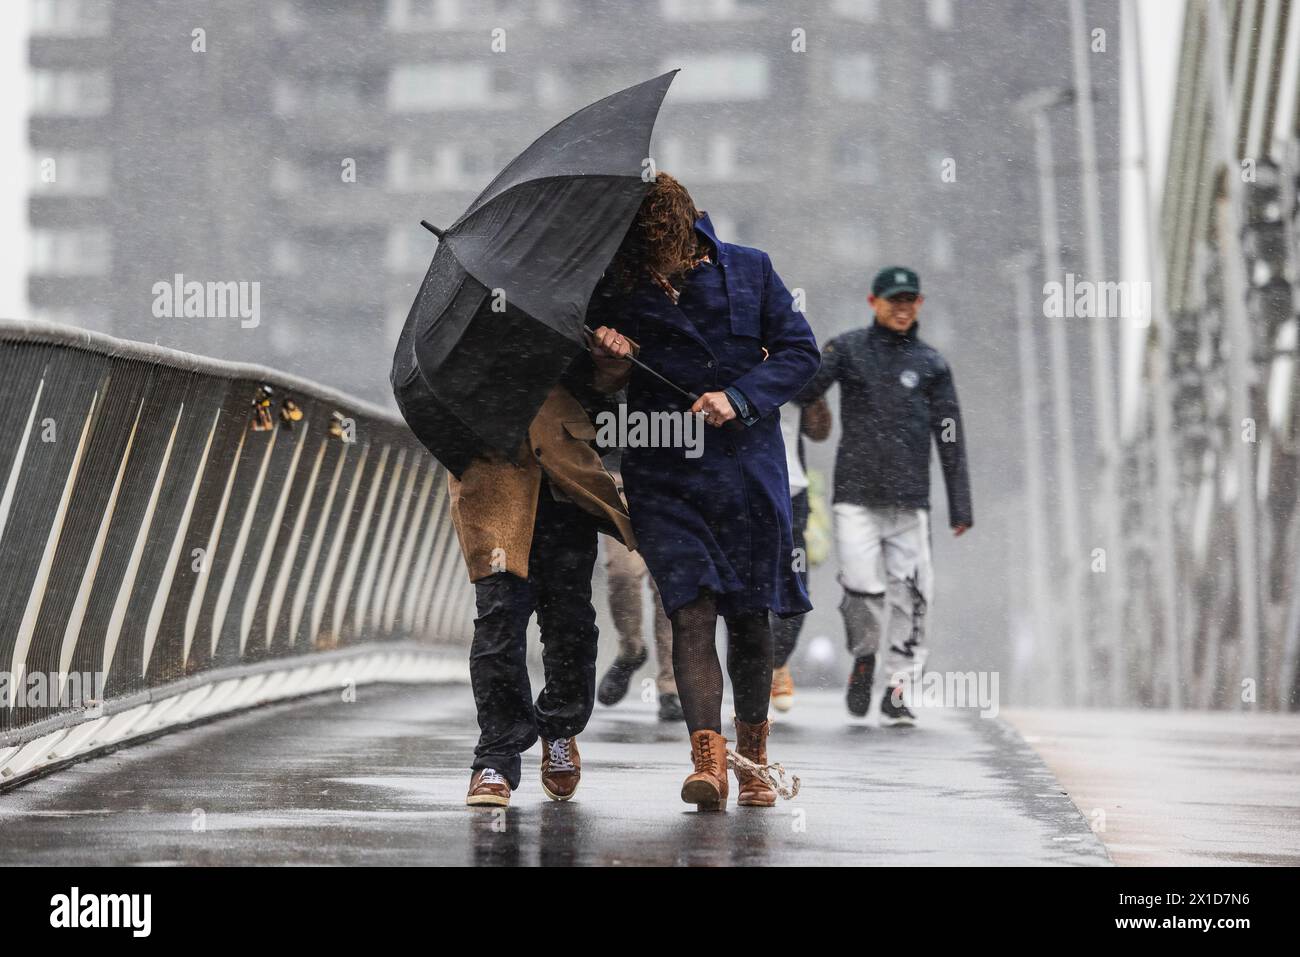 ROTTERDAM - gli escursionisti sul ponte Erasmus affrontano forti raffiche di vento e pioggia durante una forte discesa. Foto: ANP / Hollandse Hoogte / Jeffrey Groeneweg netherlands Out - belgium Out Foto Stock